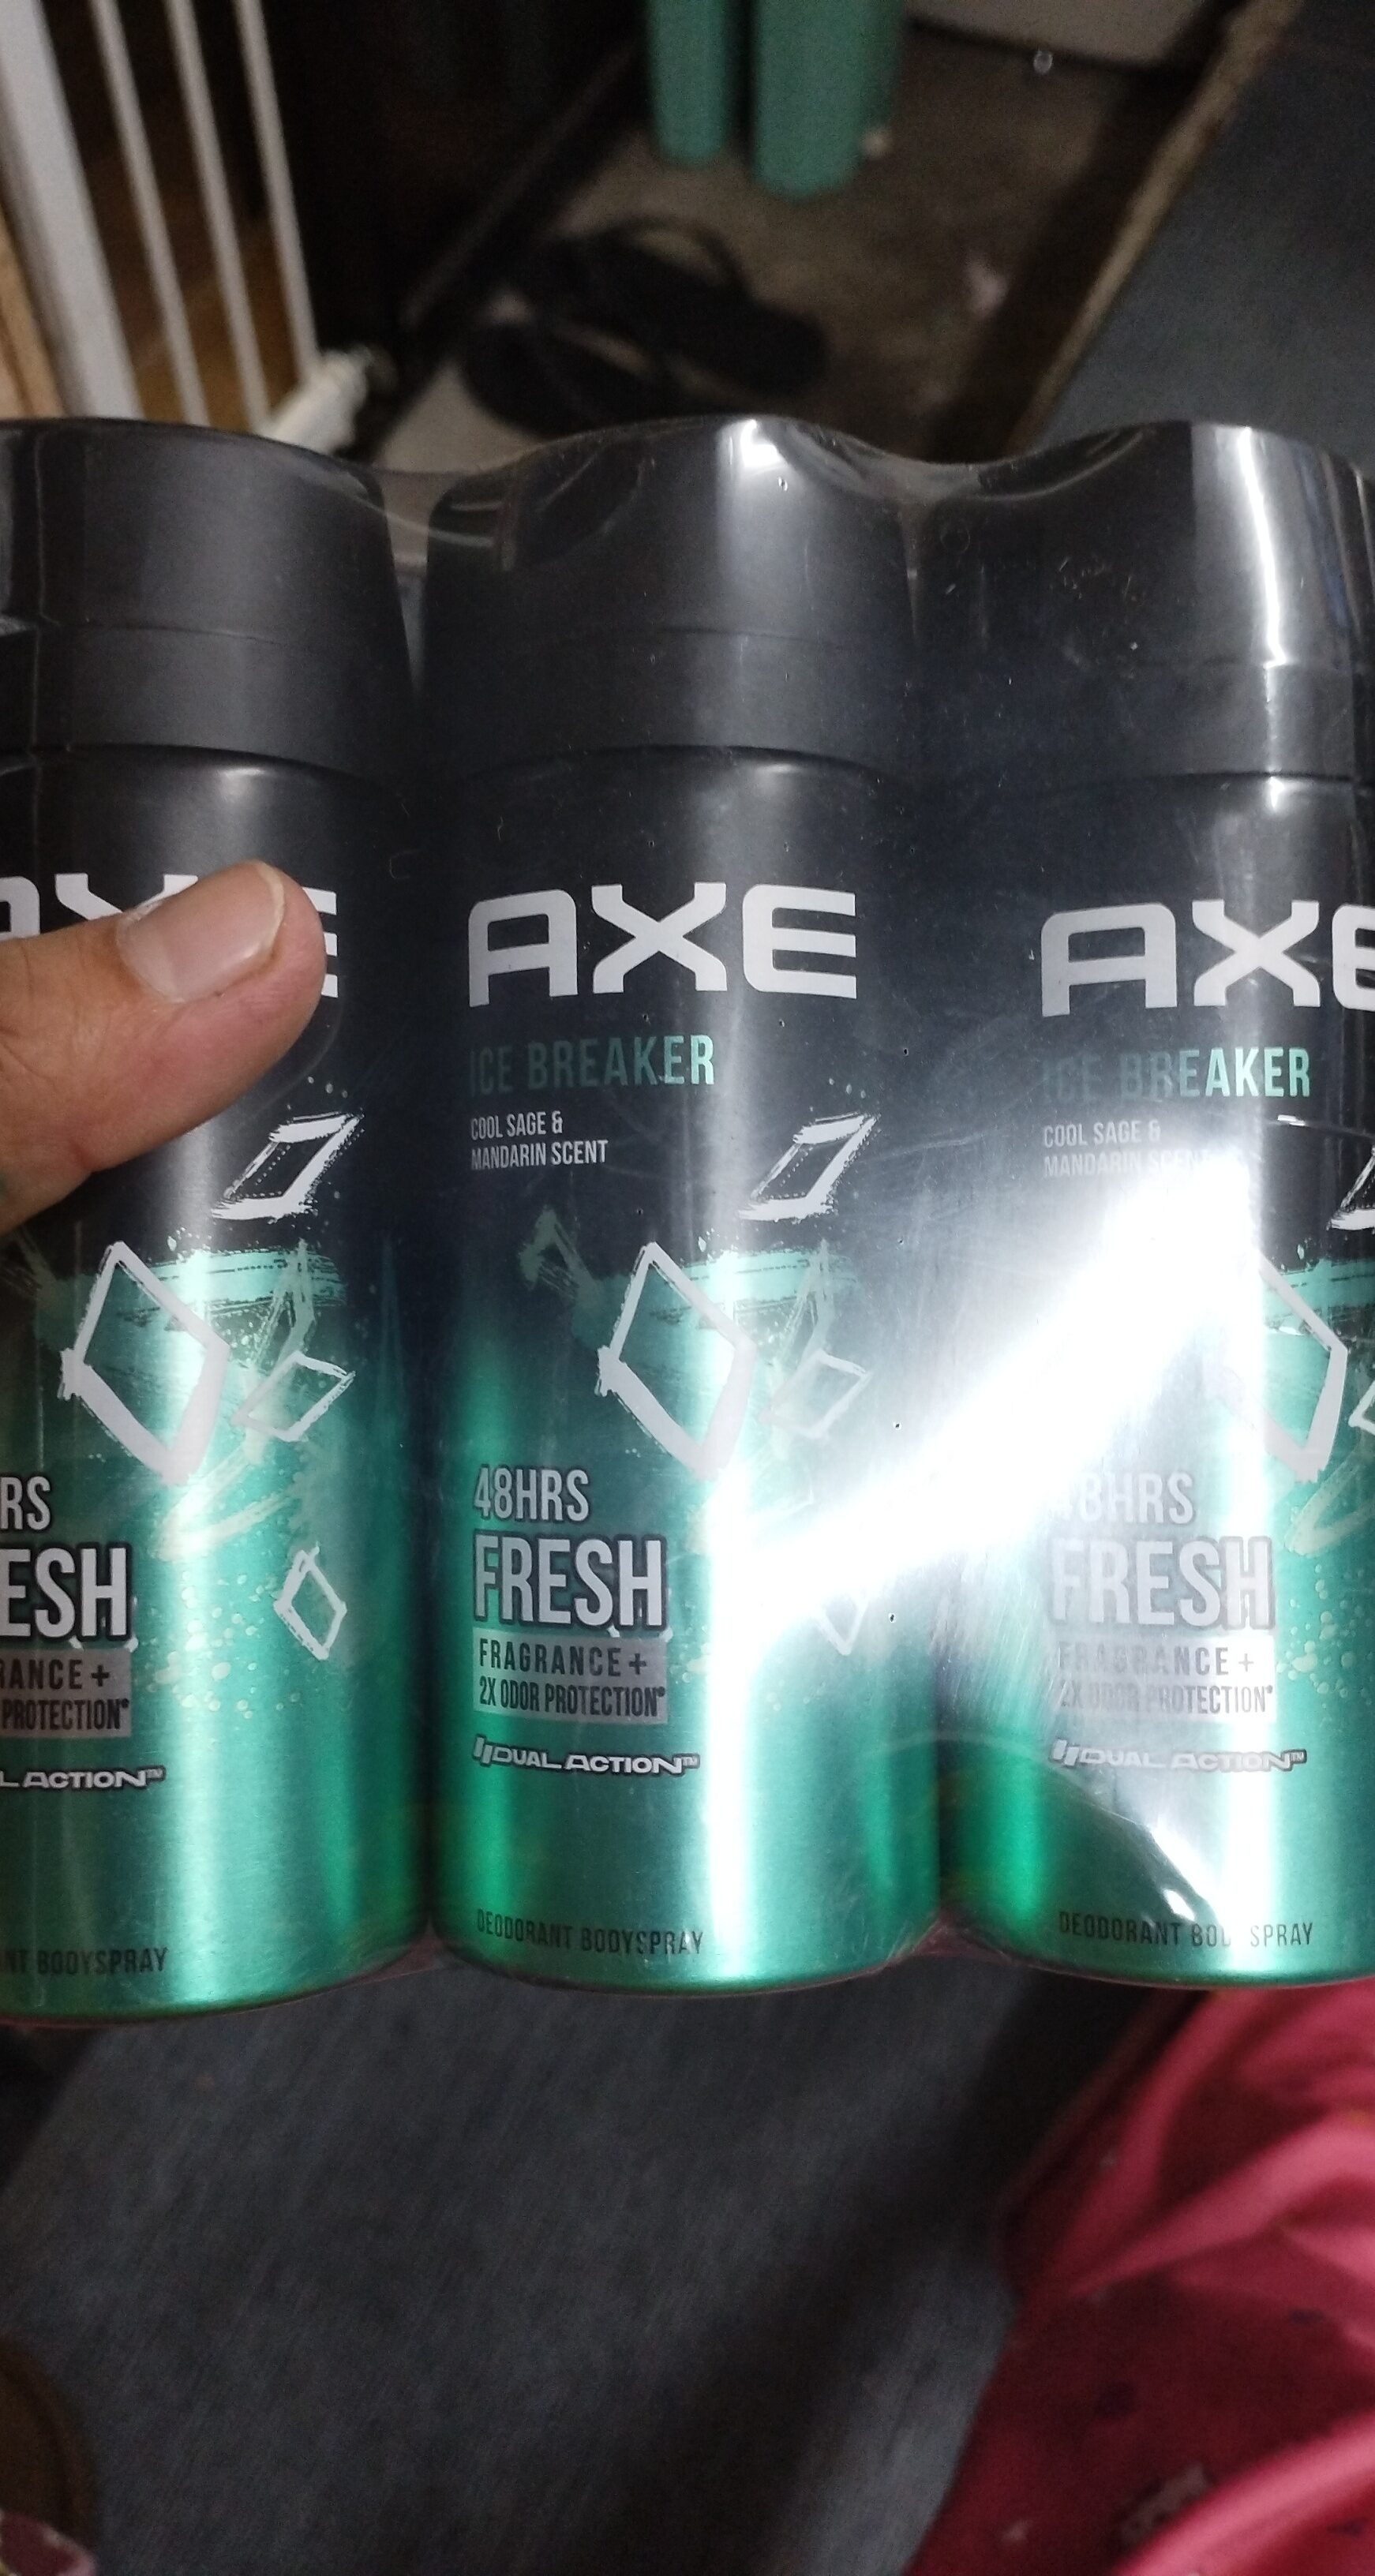 Axe ice breaker - Produit - en